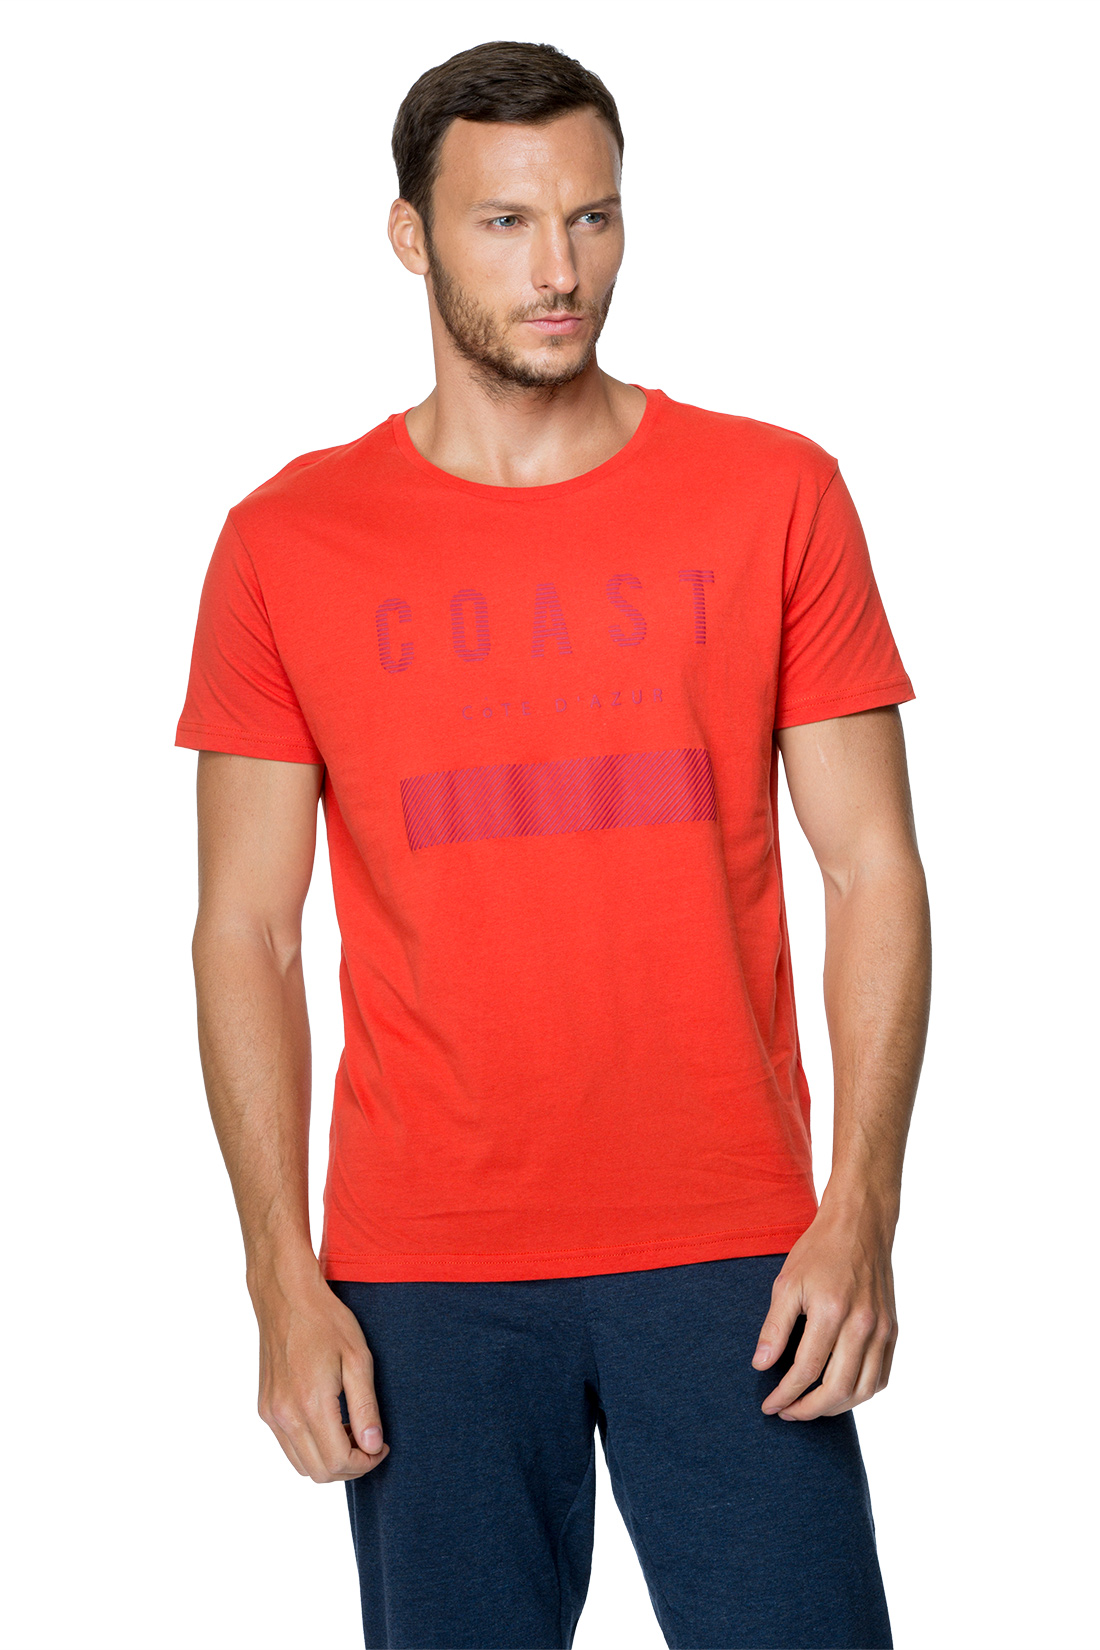 Красная футболка (арт. baon B737051), размер XXL, цвет оранжевый